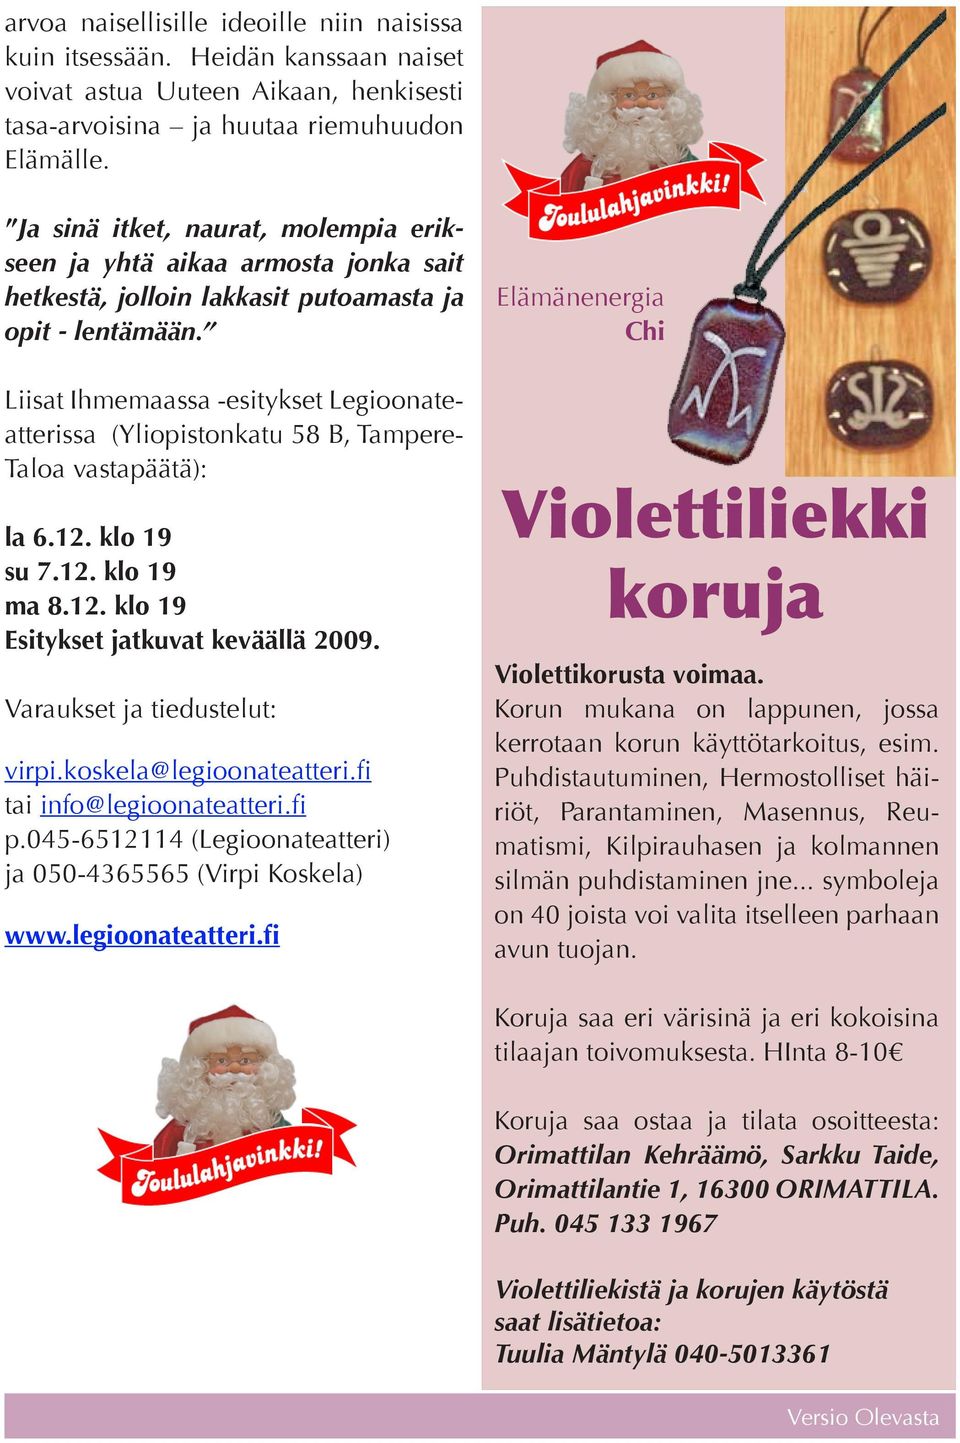 Liisat Ihmemaassa -esitykset Legioonateatterissa (Yliopistonkatu 58 B, Tampere- Taloa vastapäätä): la 6.12. klo 19 su 7.12. klo 19 ma 8.12. klo 19 Esitykset jatkuvat keväällä 2009.